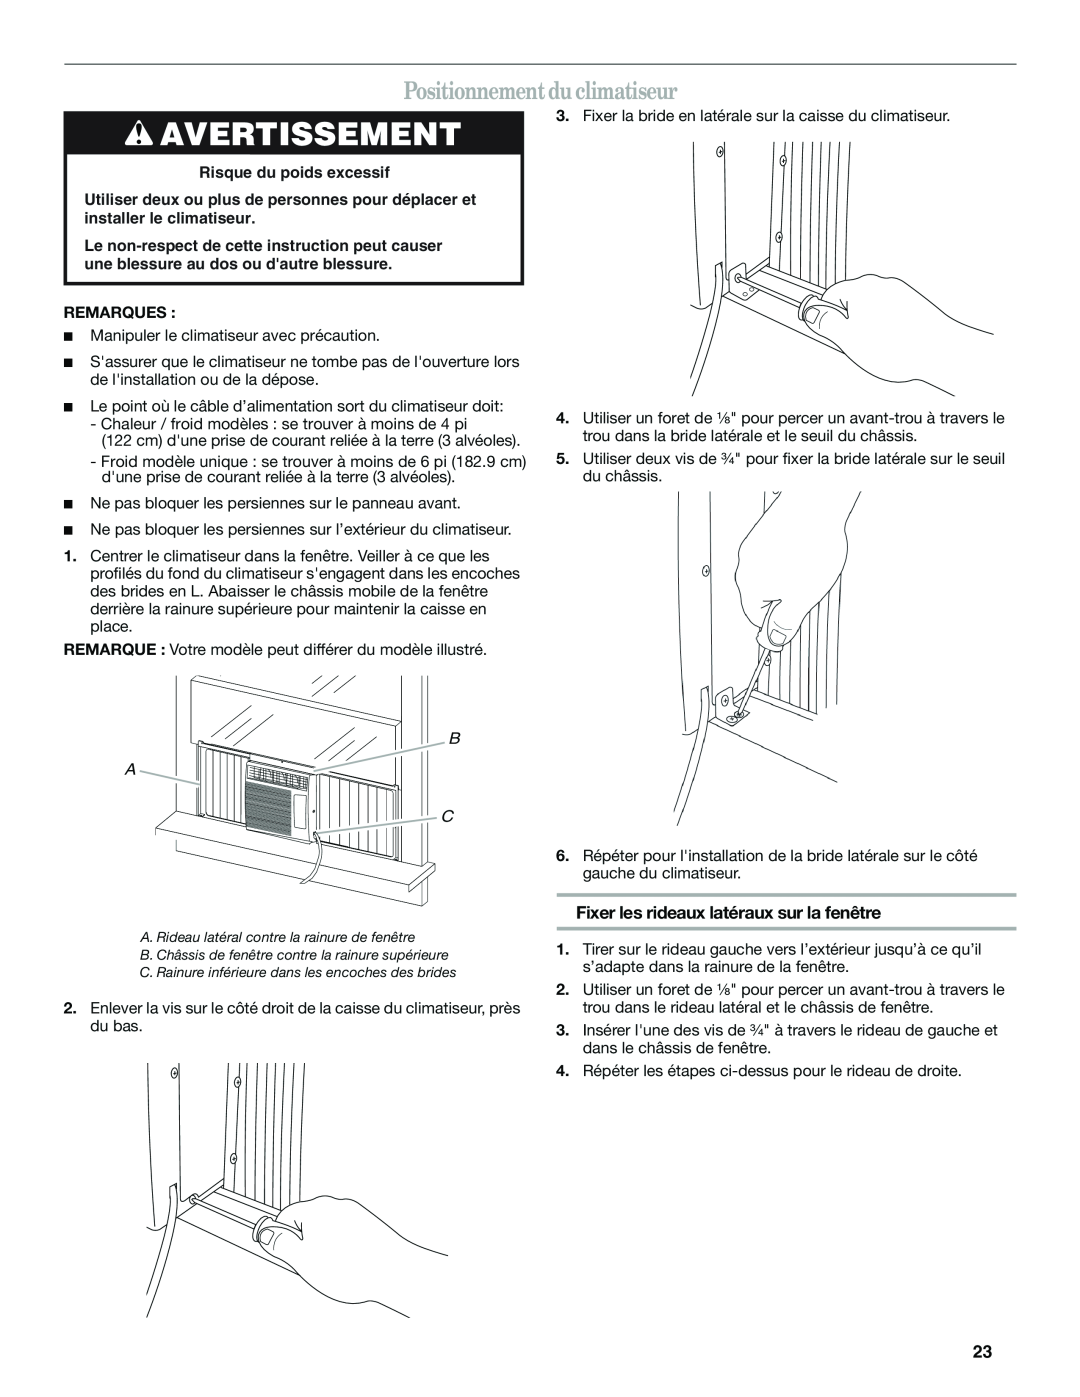 Haier CWH08A manual Positionnement du climatiseur, Avertissement, Fixer les rideaux latéraux sur la fenêtre 